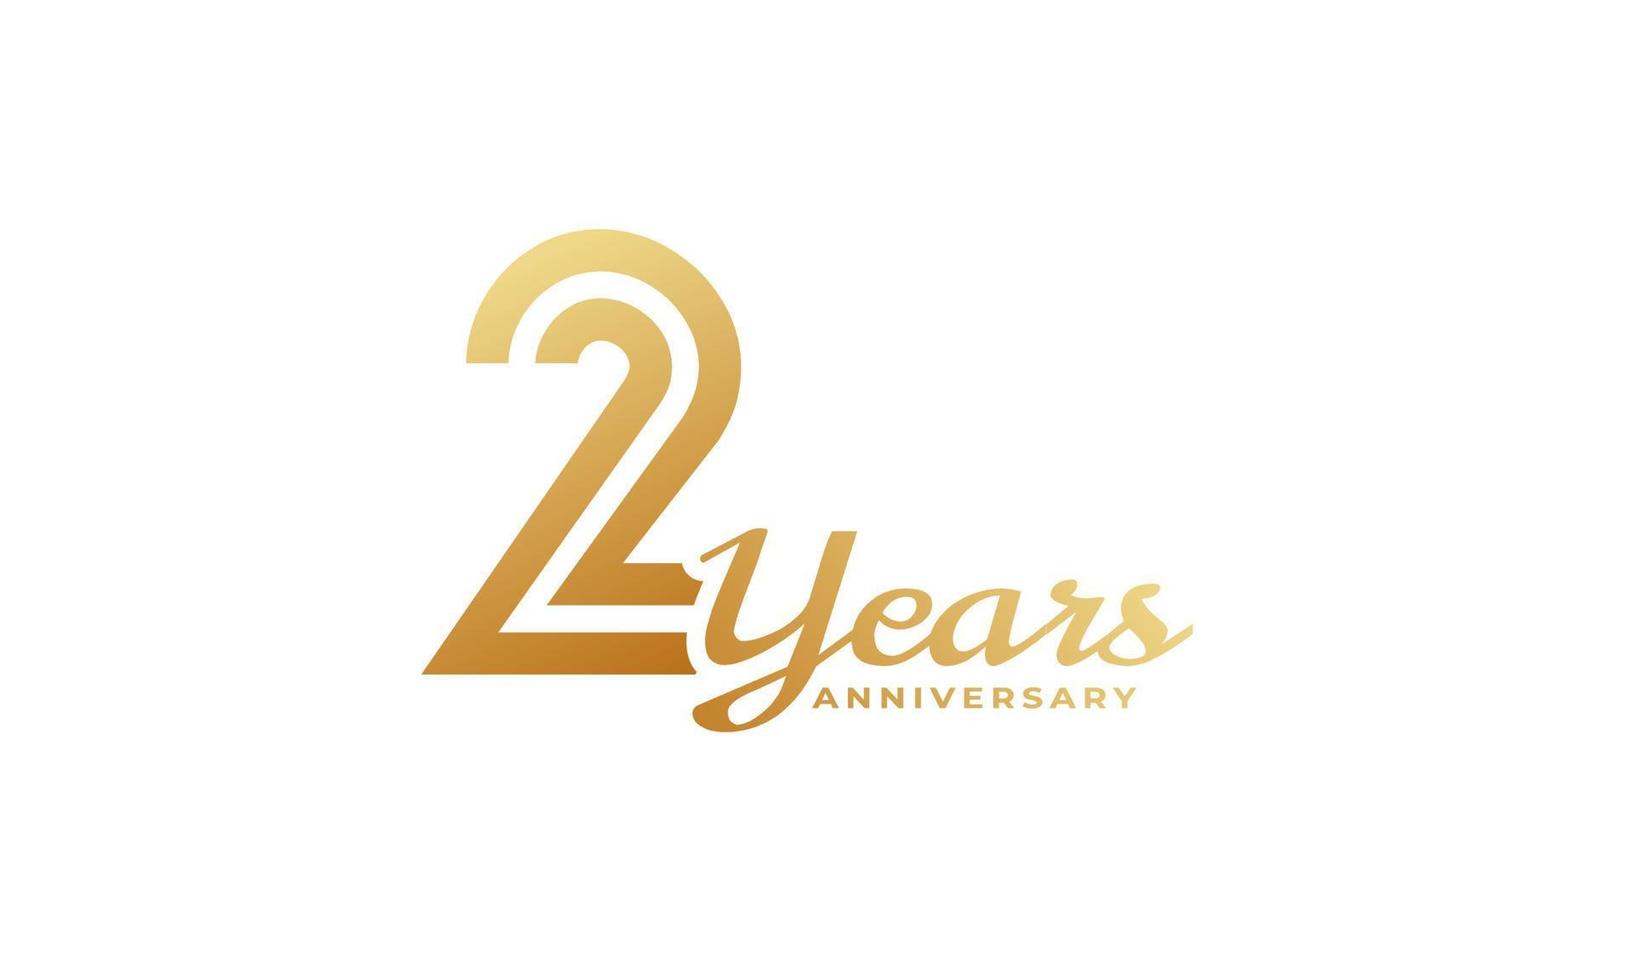 2-jährige Jubiläumsfeier mit goldener Farbe der Handschrift für Feierereignis, Hochzeit, Grußkarte und Einladung lokalisiert auf weißem Hintergrund vektor